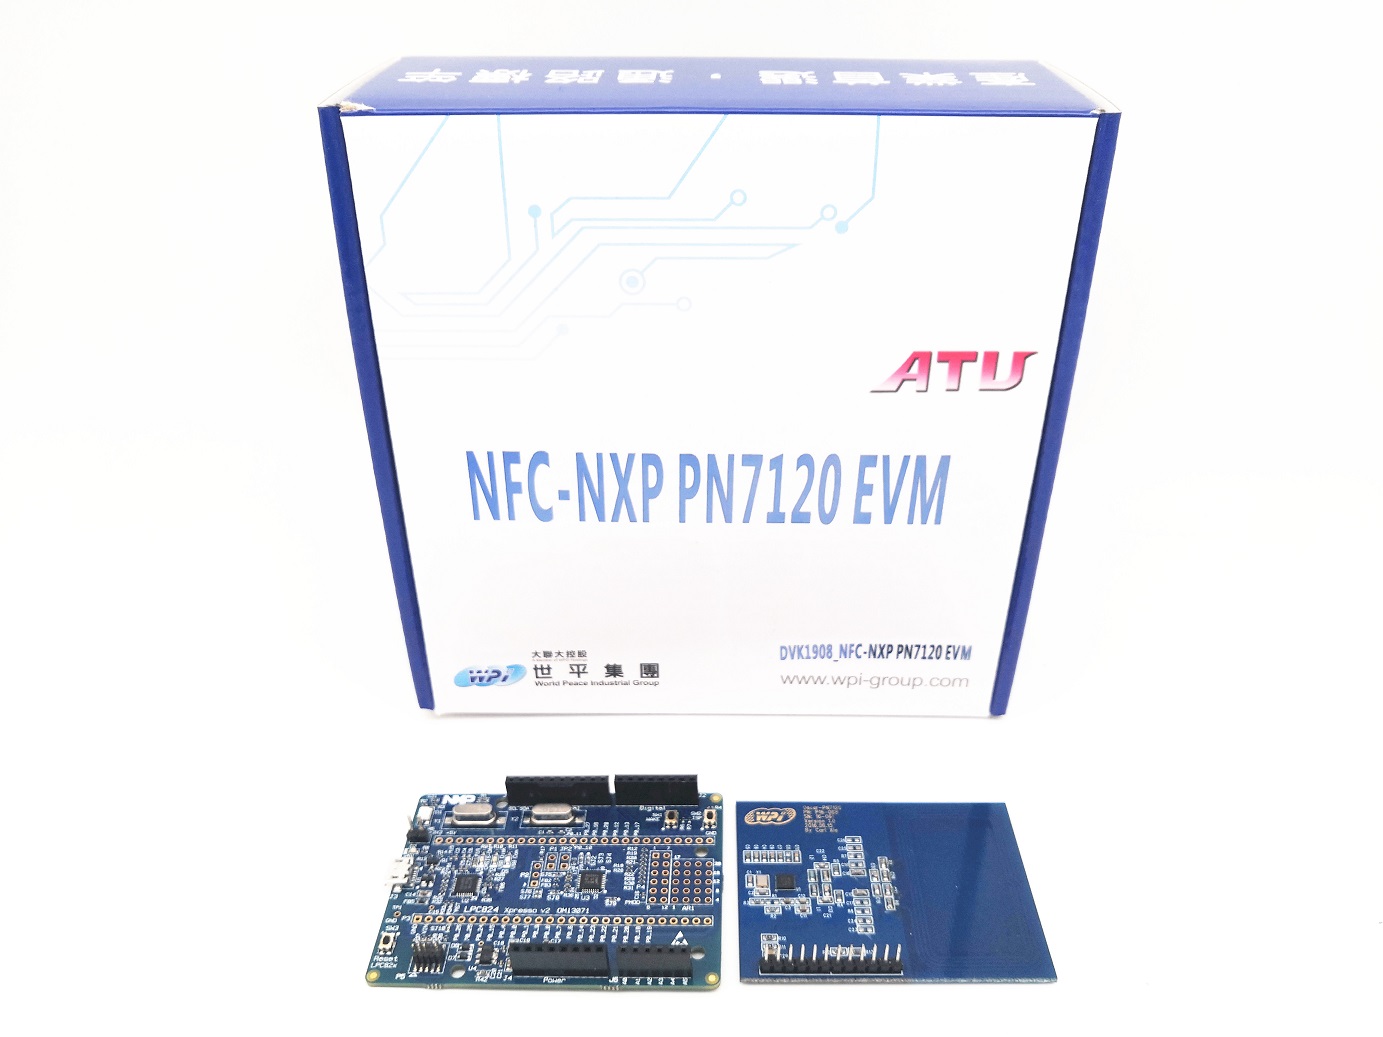 DVK1908_NFC-NXP PN7120 EVM